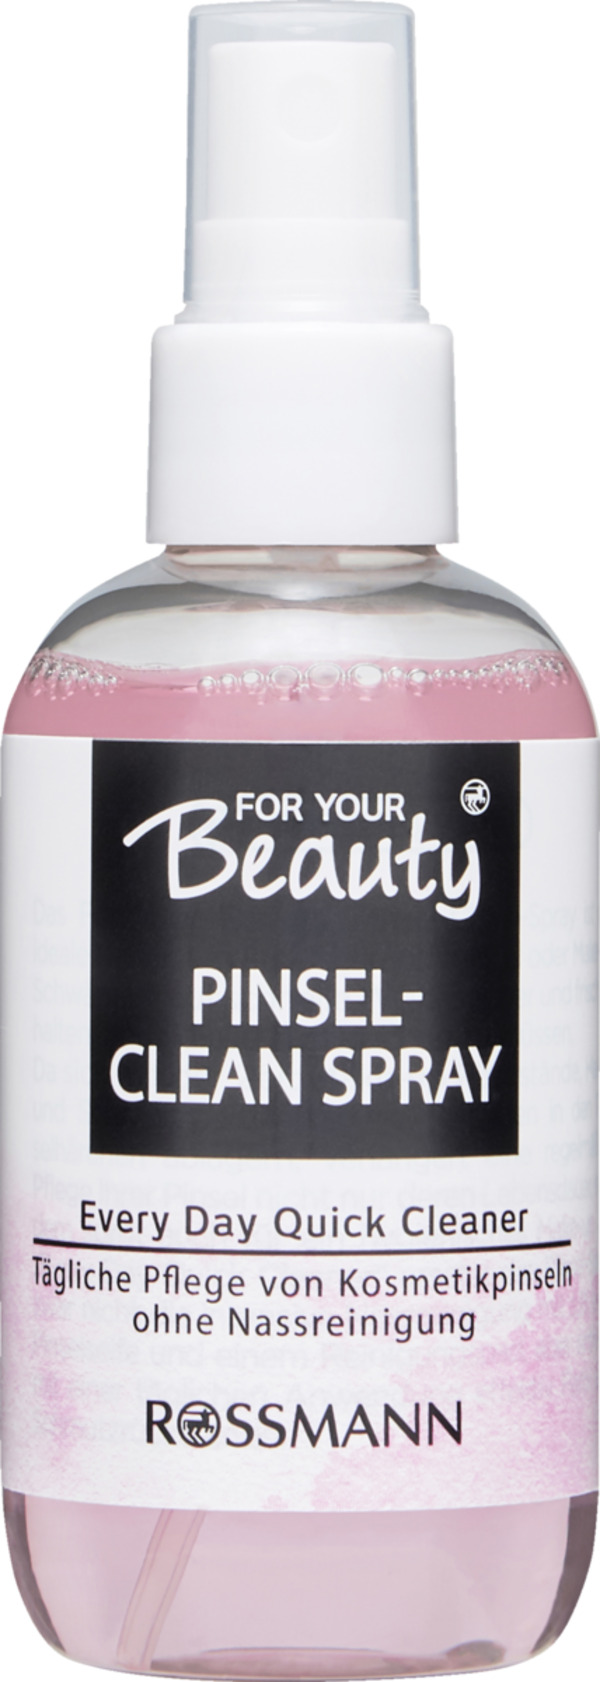 Bild 1 von FOR YOUR Beauty Pinsel-Clean-Spray